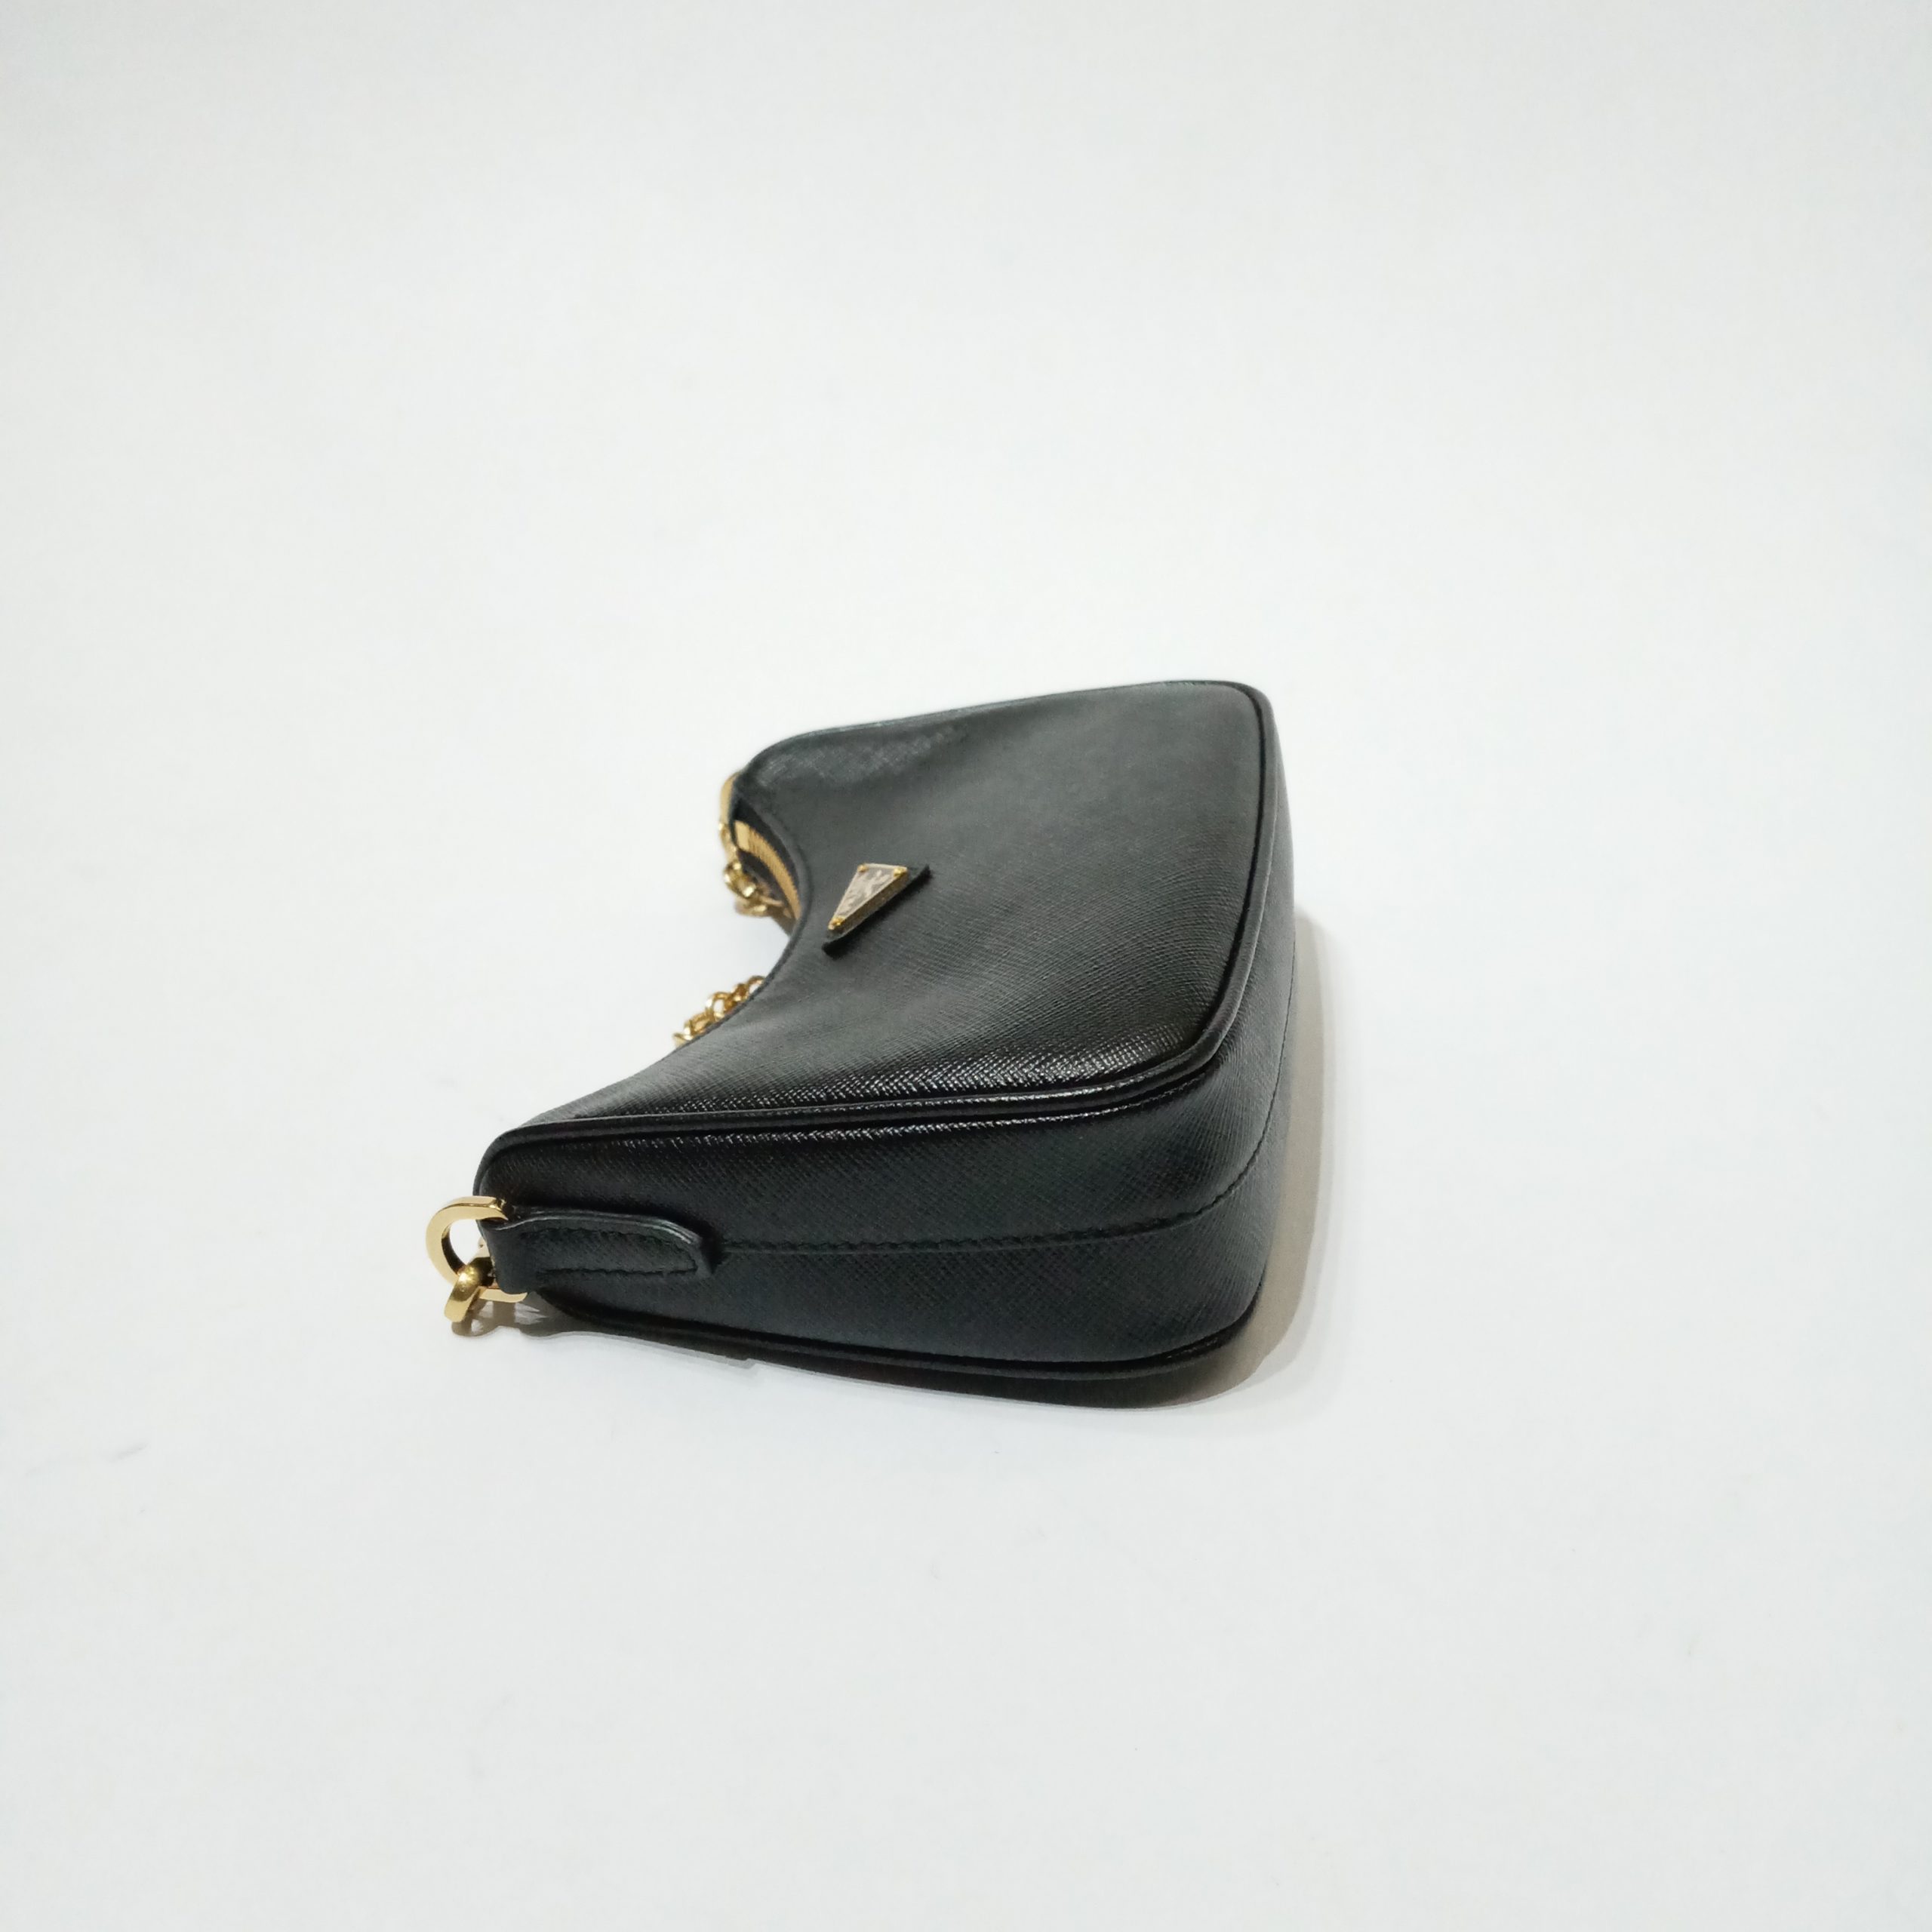 prada 1bh174 saffiano mini bag black Archives - BrandConscious